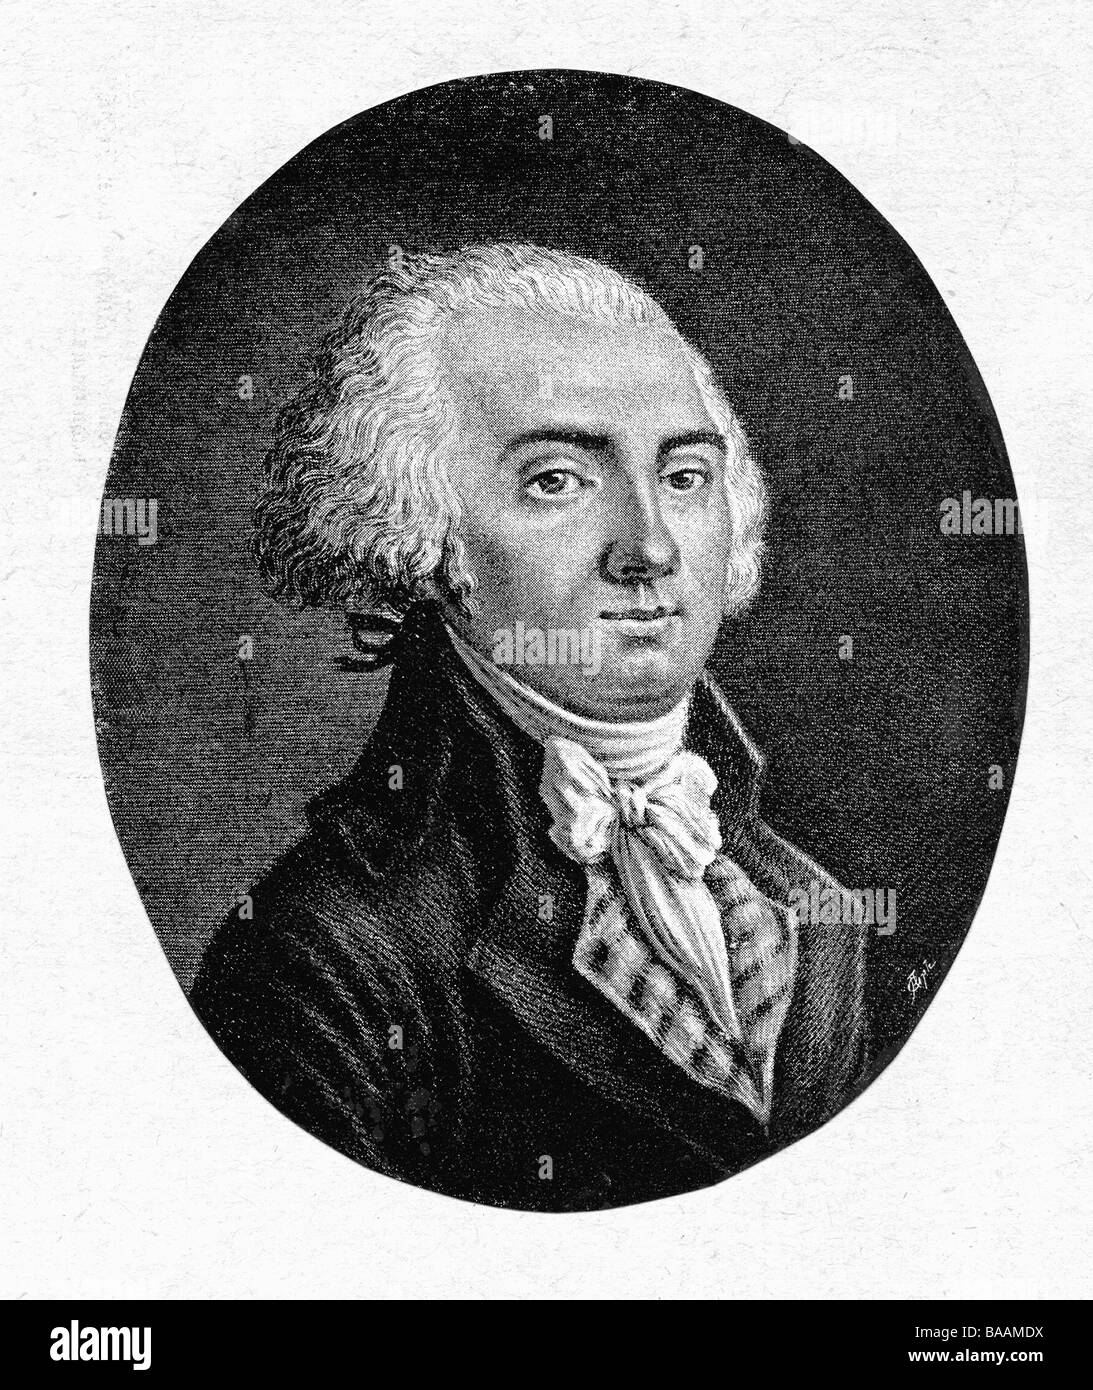 Petion de Villeneuve, Jerome, 3.1.1756 - été 1794, auteur/écrivain français et politicien, maire de Paris 16.11.1791 - 2.6.1794, portrait, après mezzotint de Levachez, Banque D'Images